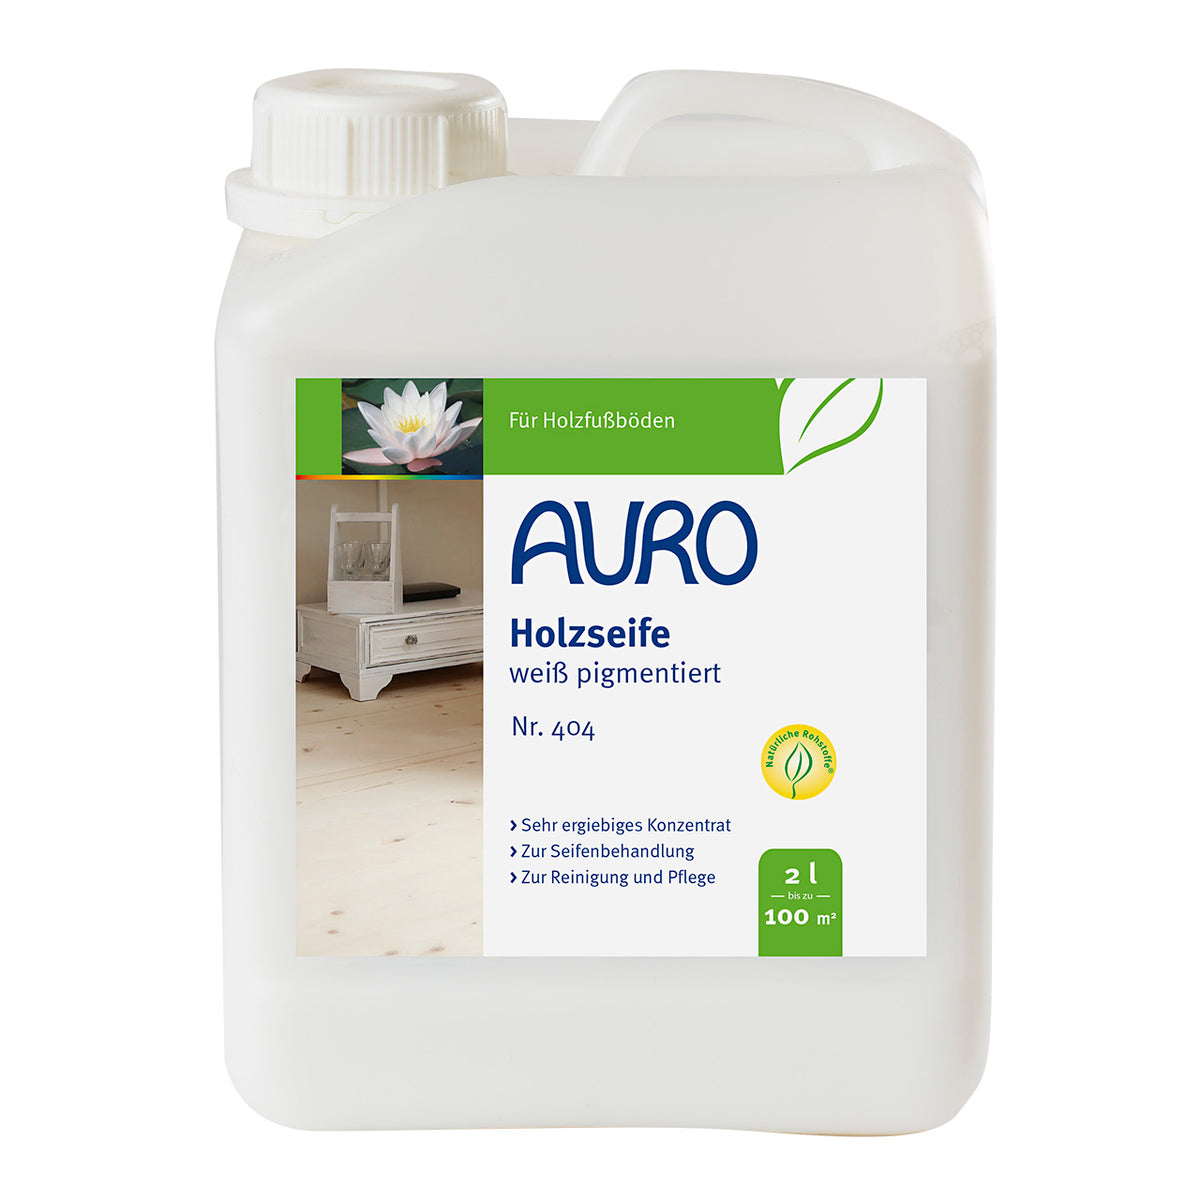 AURO Holzseife-Weiß pigmentiert Nr. 404